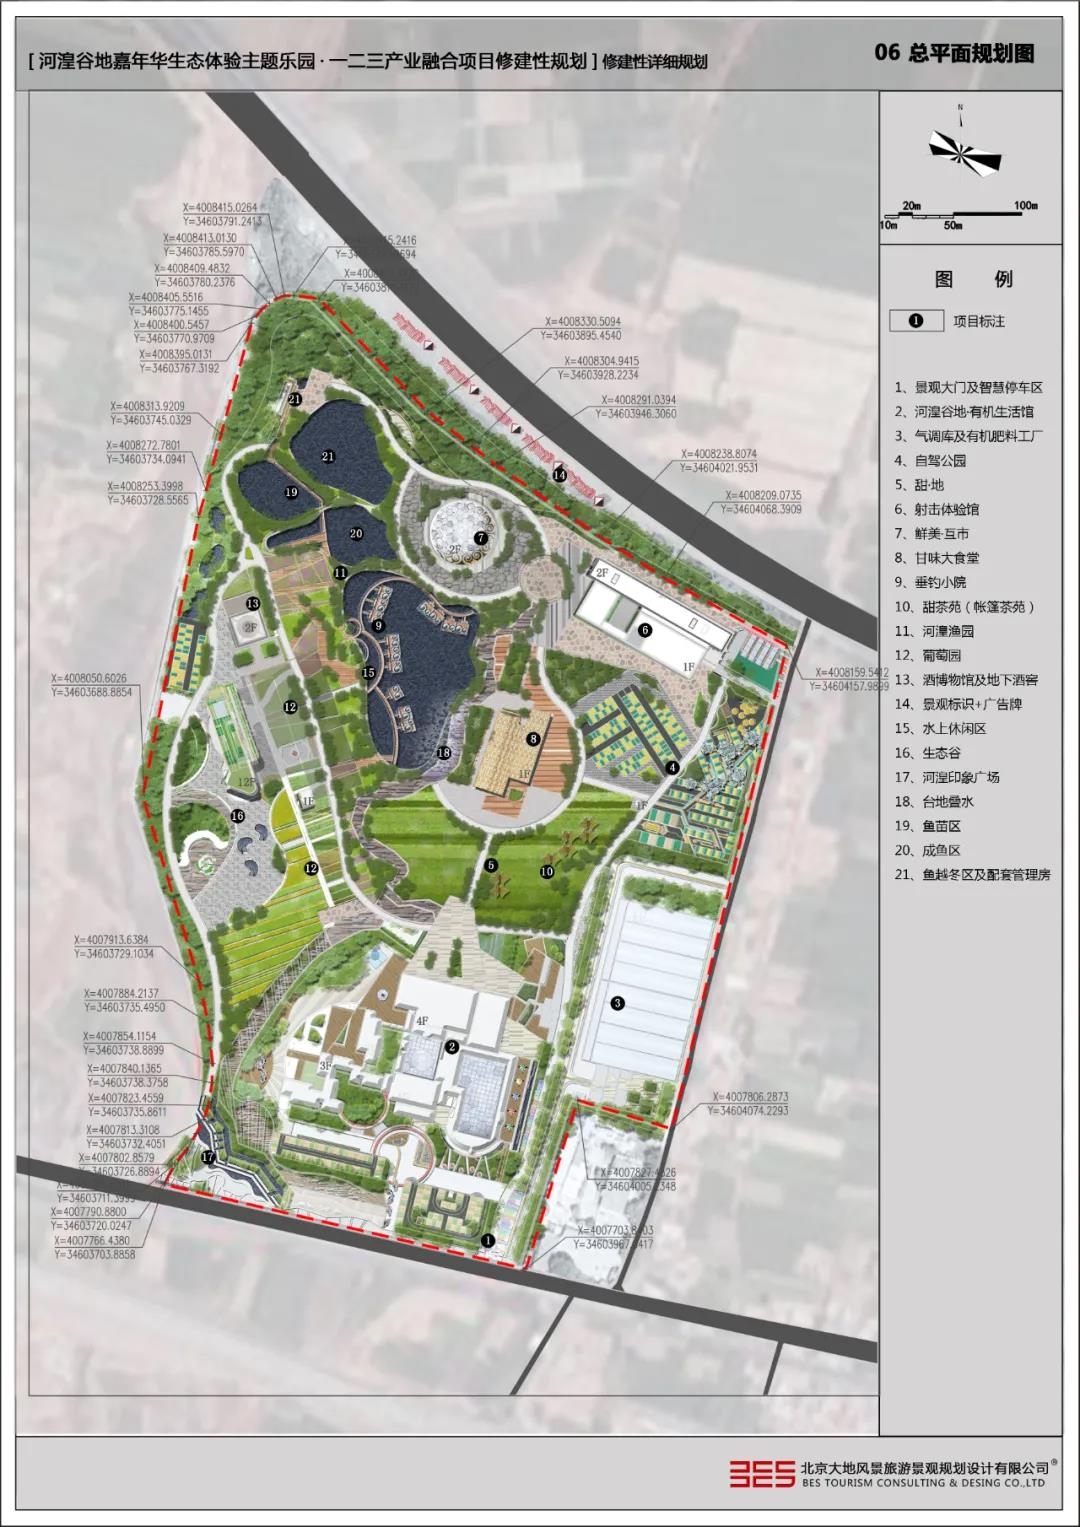 规划用地22公顷 兰州市红古区将打造生态体验主题乐园